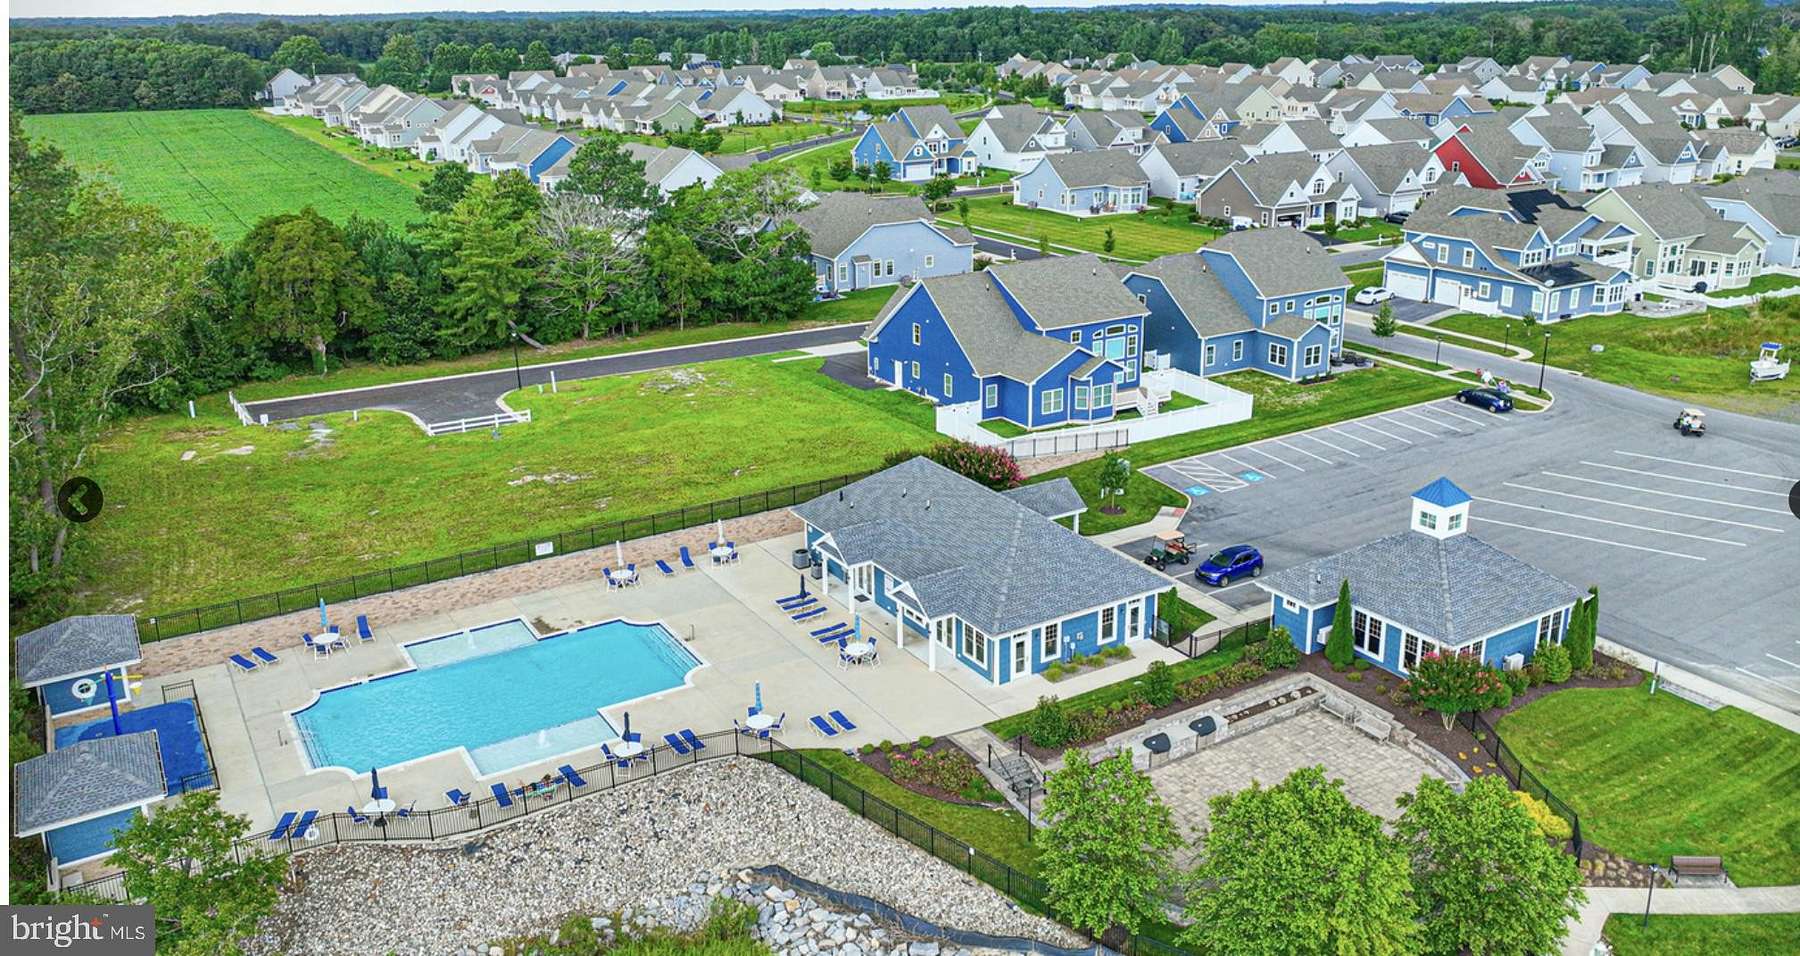 0.31 Acres of Residential Land for Sale in Dagsboro, Delaware